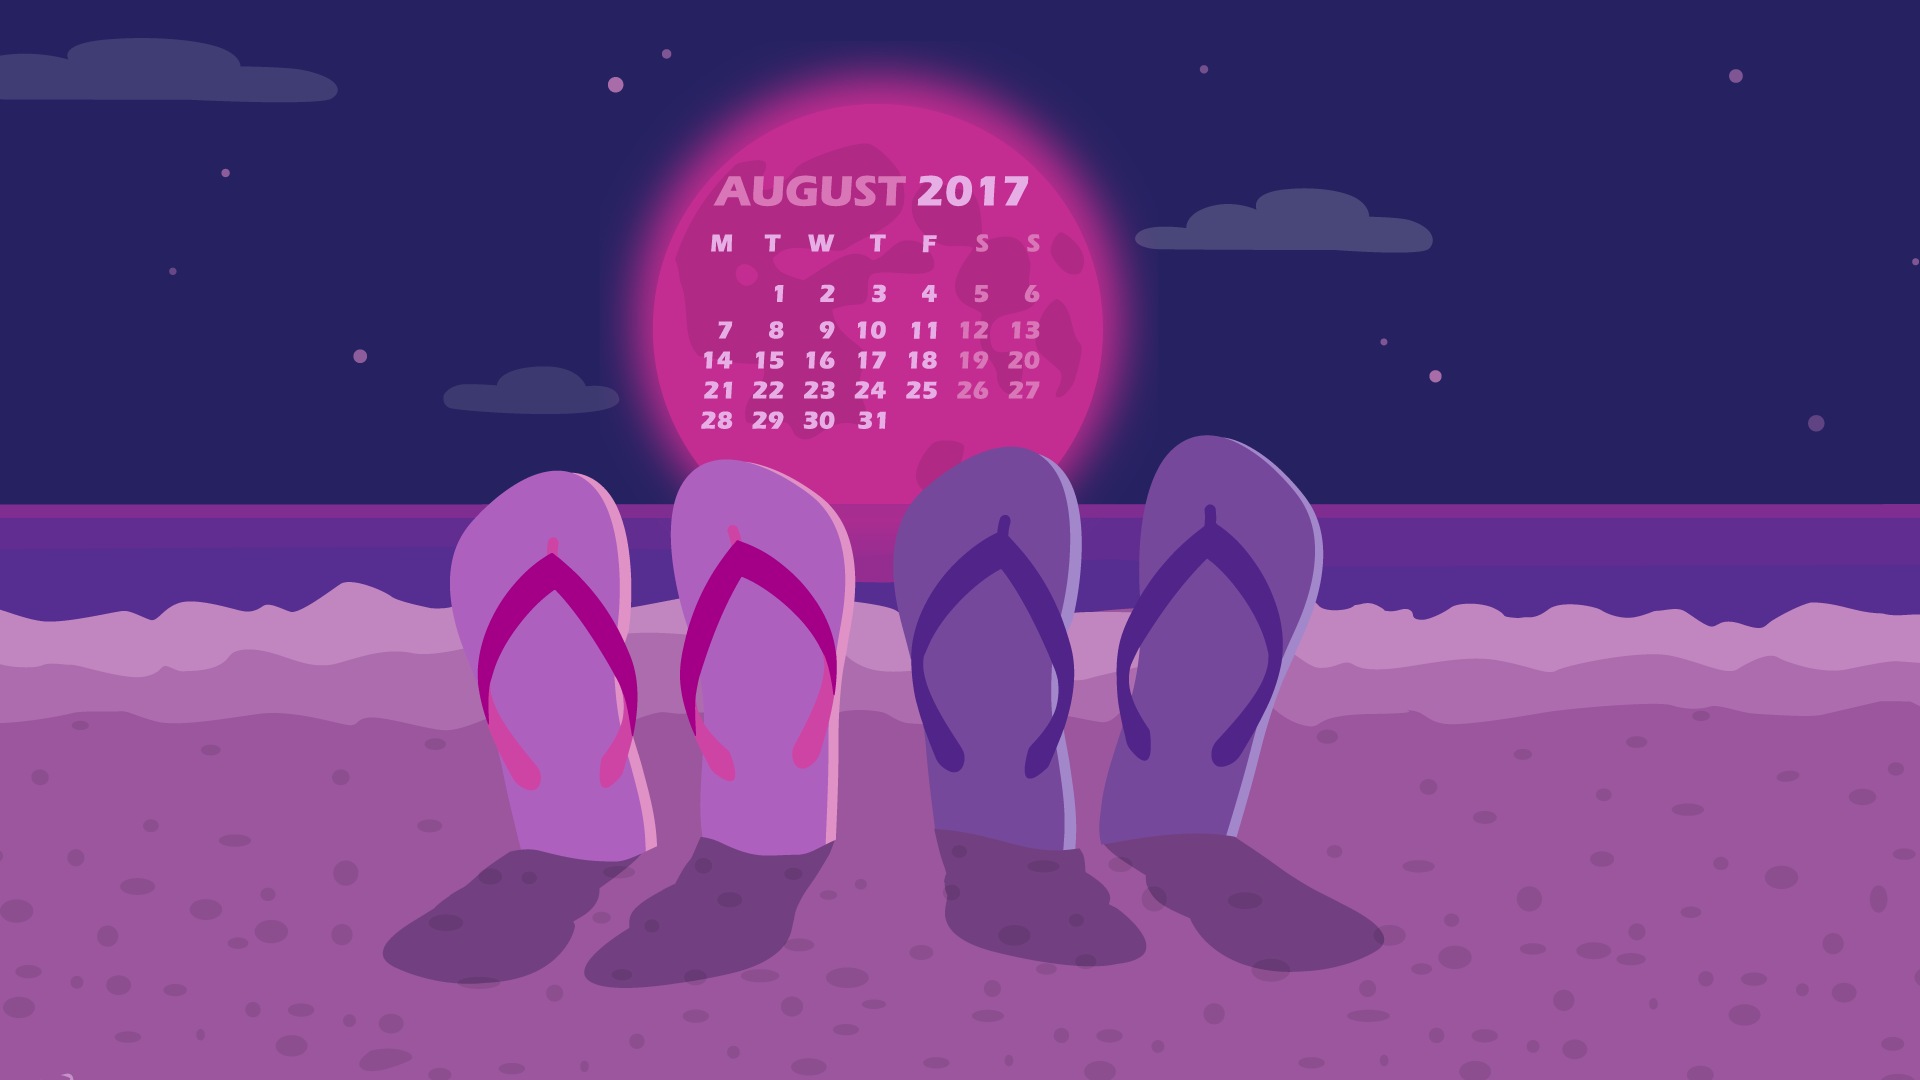 August 2017 calendar wallpaper #23 - 1920x1080